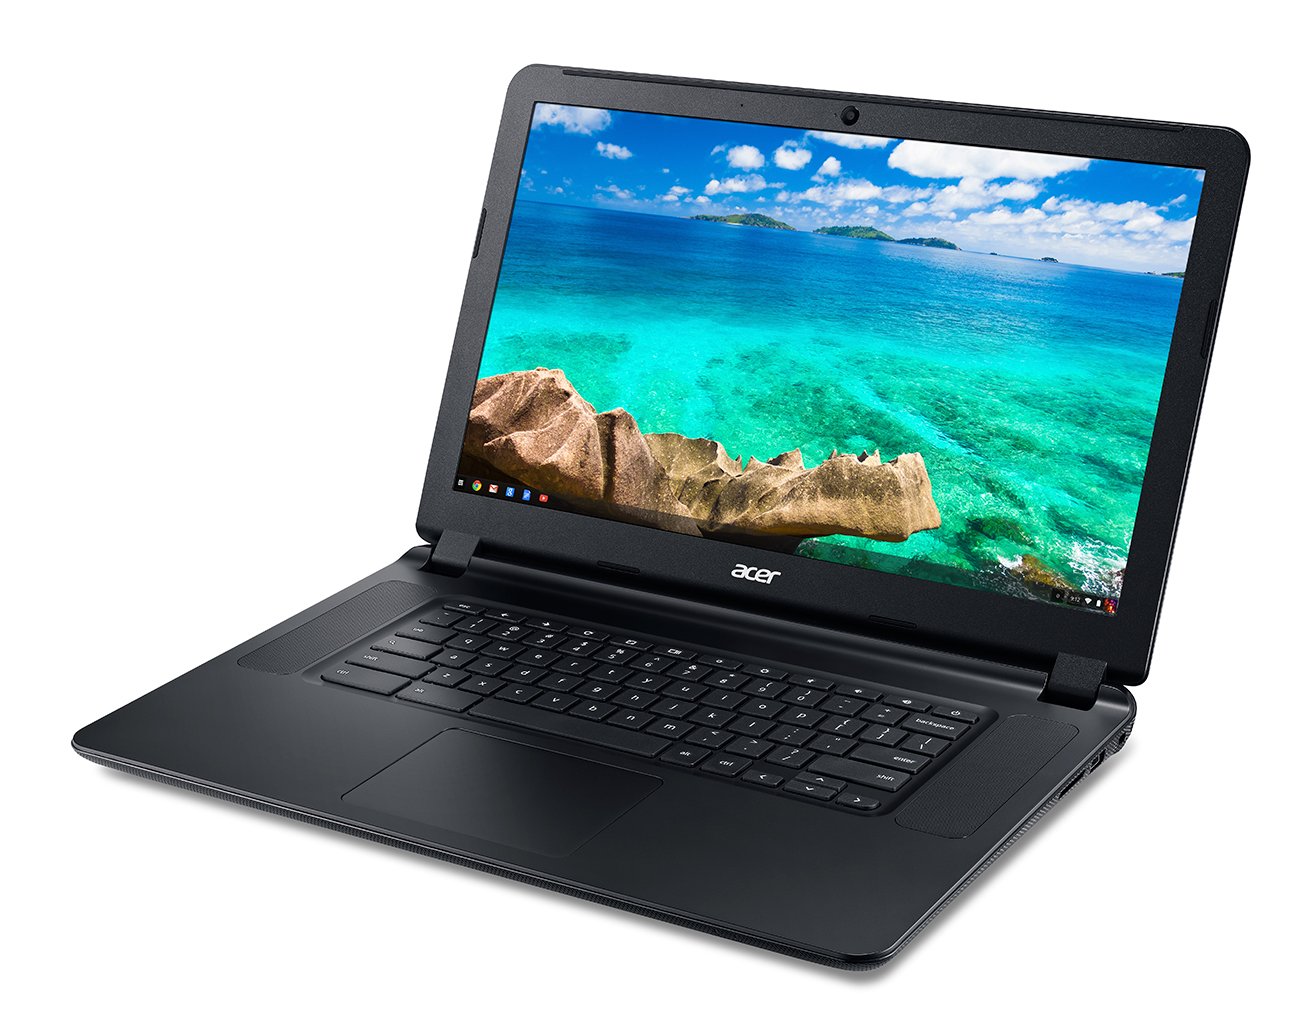 Acer C720P, un nouveau Chromebook tactile attendu à 299$